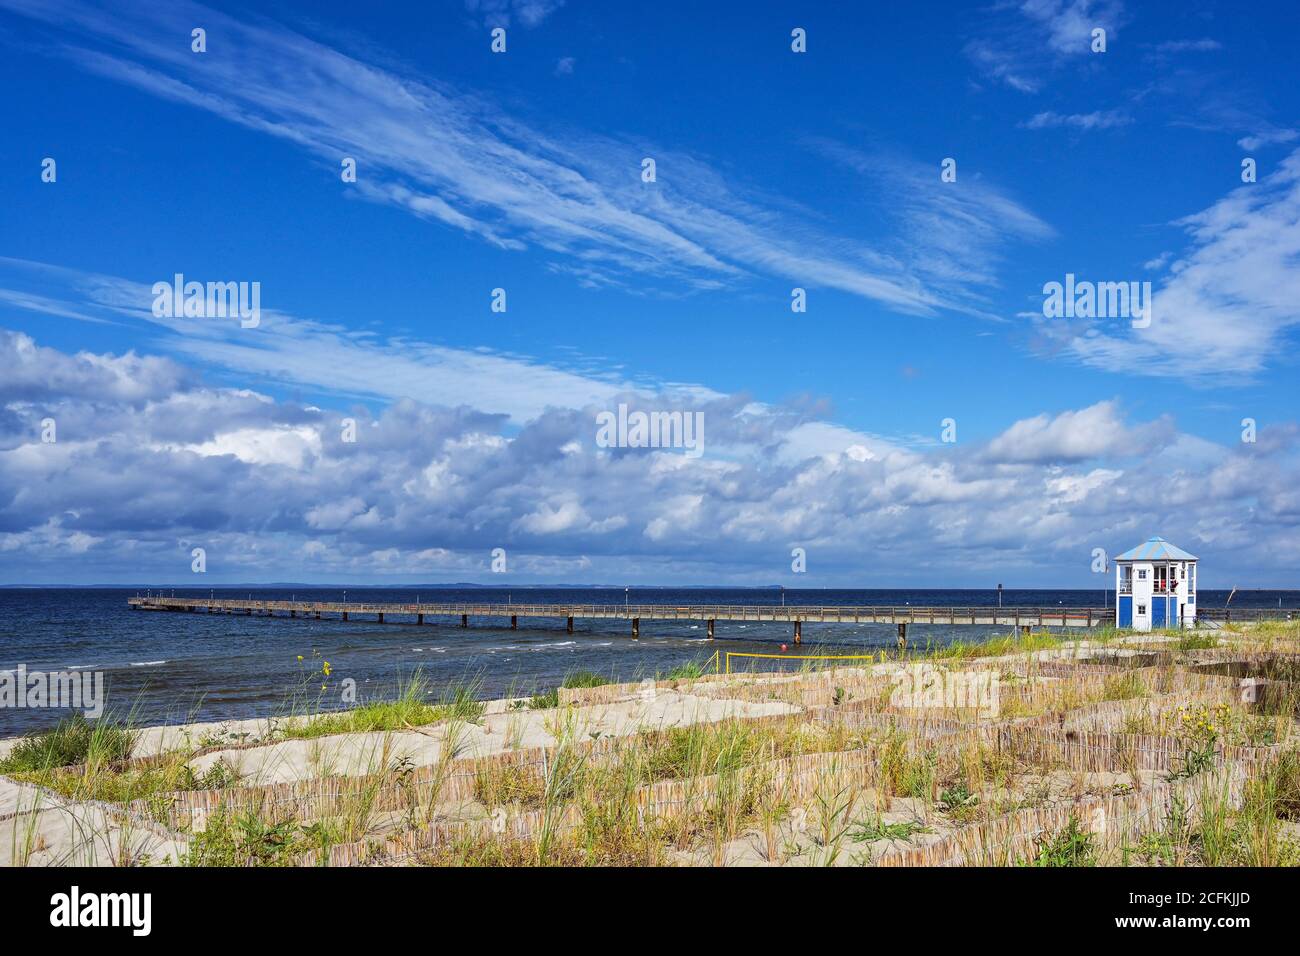 Puente marítimo de Lubmin bajo un cielo azul con nubes, balneario turístico para vacaciones en la playa en el Mar Báltico en Mecklemburgo Westpomerania, Alemania, Foto de stock